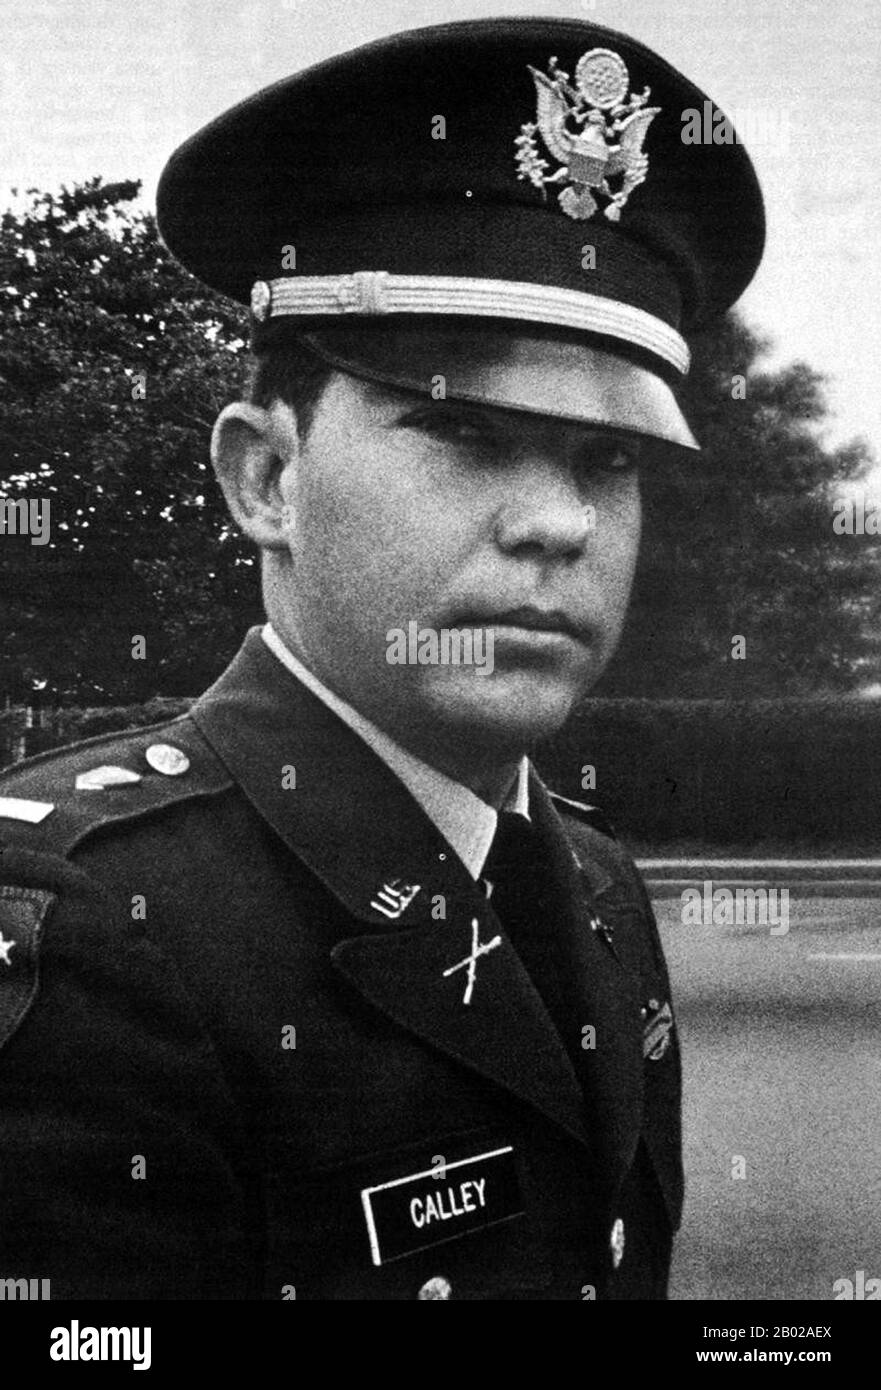 Le massacre de My Lai a été le meurtre de masse de 347–504 civils non armés au sud du Vietnam le 16 mars 1968 par des soldats de l'armée américaine de la compagnie "Charlie" du premier Bataillon, 20ème Régiment d'infanterie, 11ème Brigade de la division américaine. La plupart des victimes étaient des femmes, des enfants (y compris des bébés) et des personnes âgées. Beaucoup ont été violées, battues et torturées, et certains des corps ont été plus tard jugés mutilés. Alors que 26 soldats américains ont été initialement accusés d'infractions pénales pour leurs actions à Mỹ Lai, seul le second lieutenant William Calley, un chef de peloton à Charlie Company, Banque D'Images